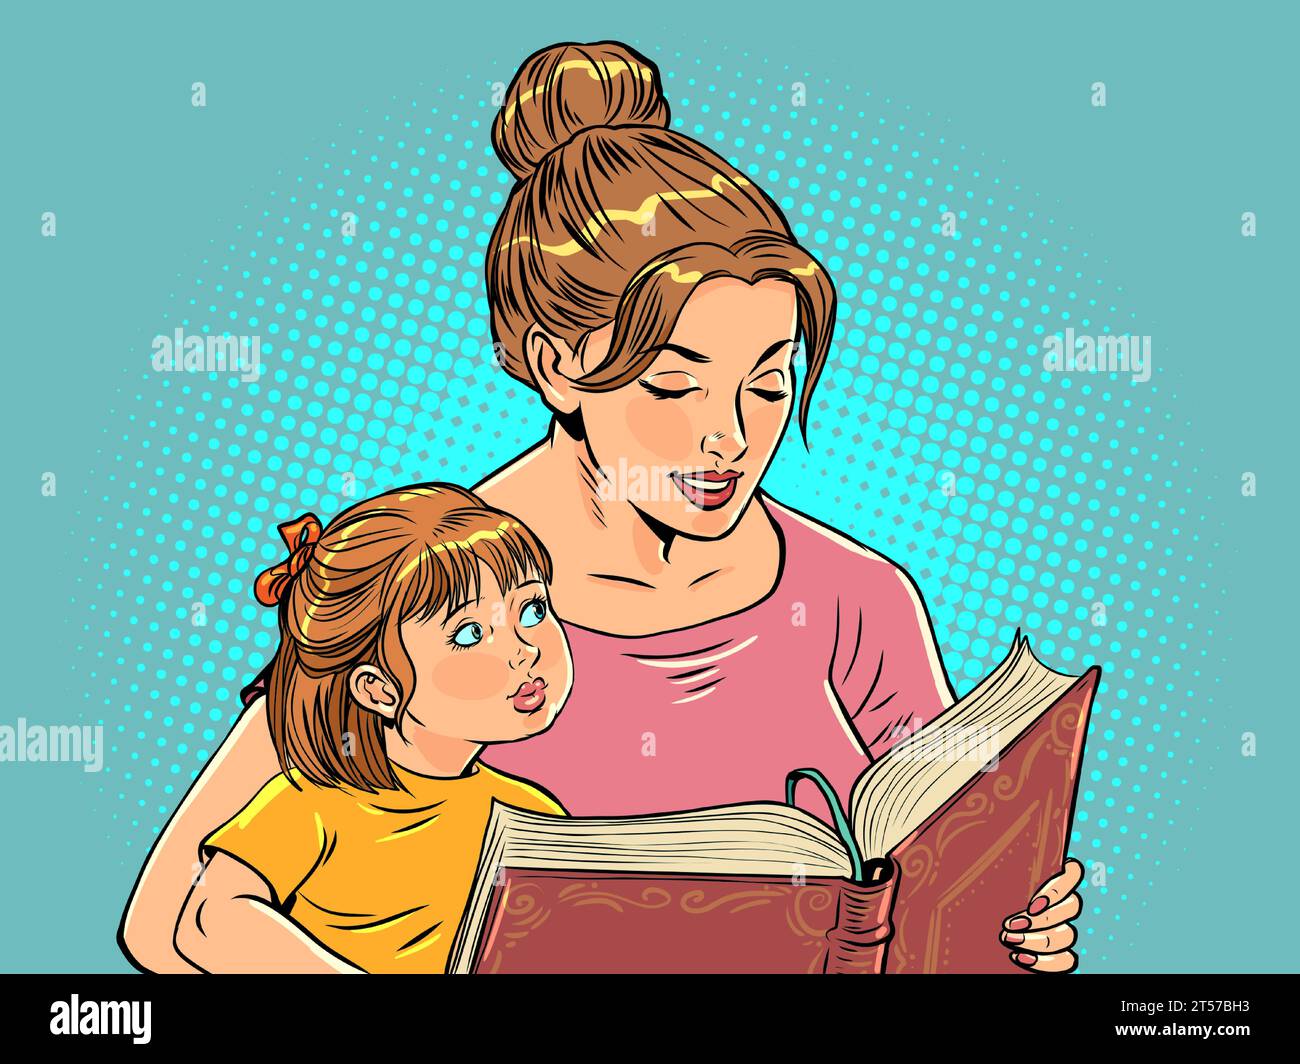 Educazione prescolare dei bambini. Rapporto tra madre e figli. Una donna sta leggendo un libro a una ragazza. Cartoni animati a fumetti pop art retro Vector Ill Illustrazione Vettoriale